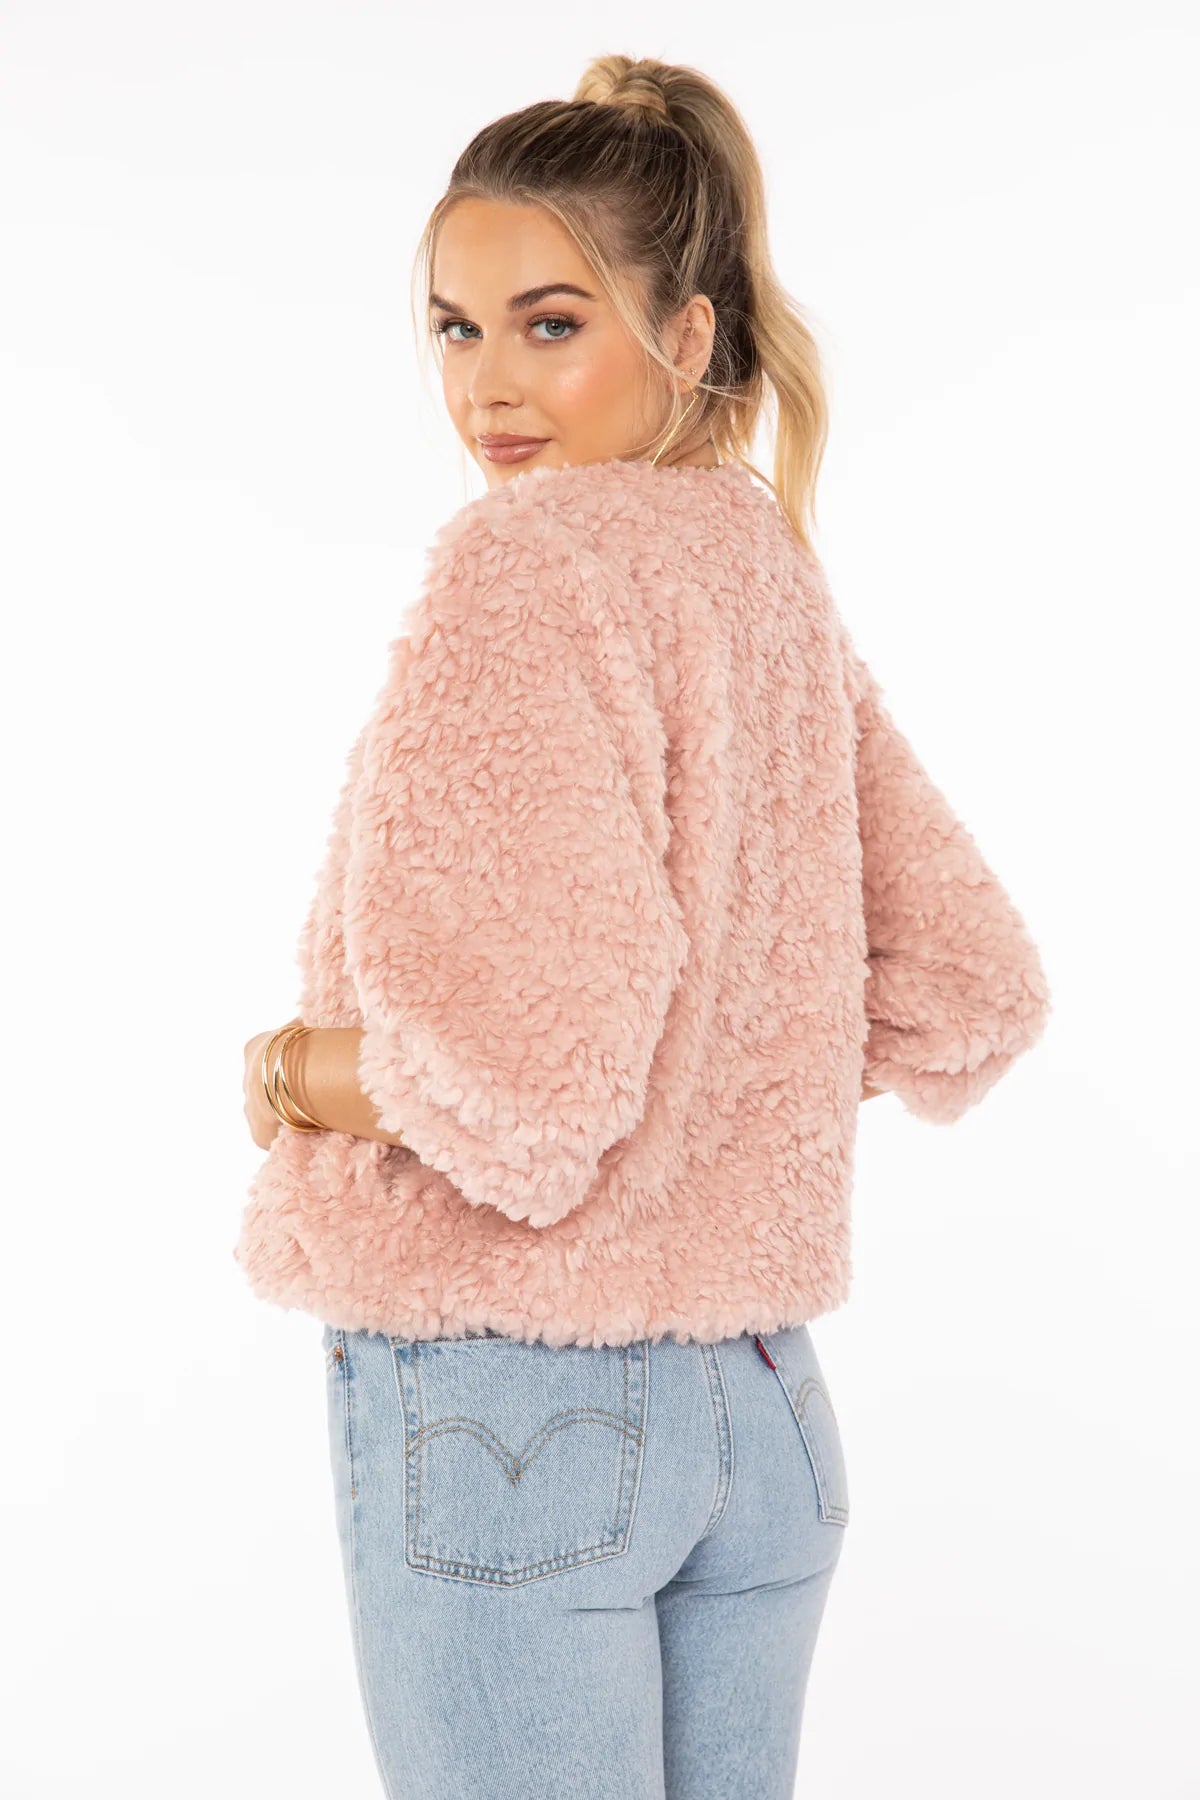 Bishop + Young Blush Pink Anis Faux Fur Jacket